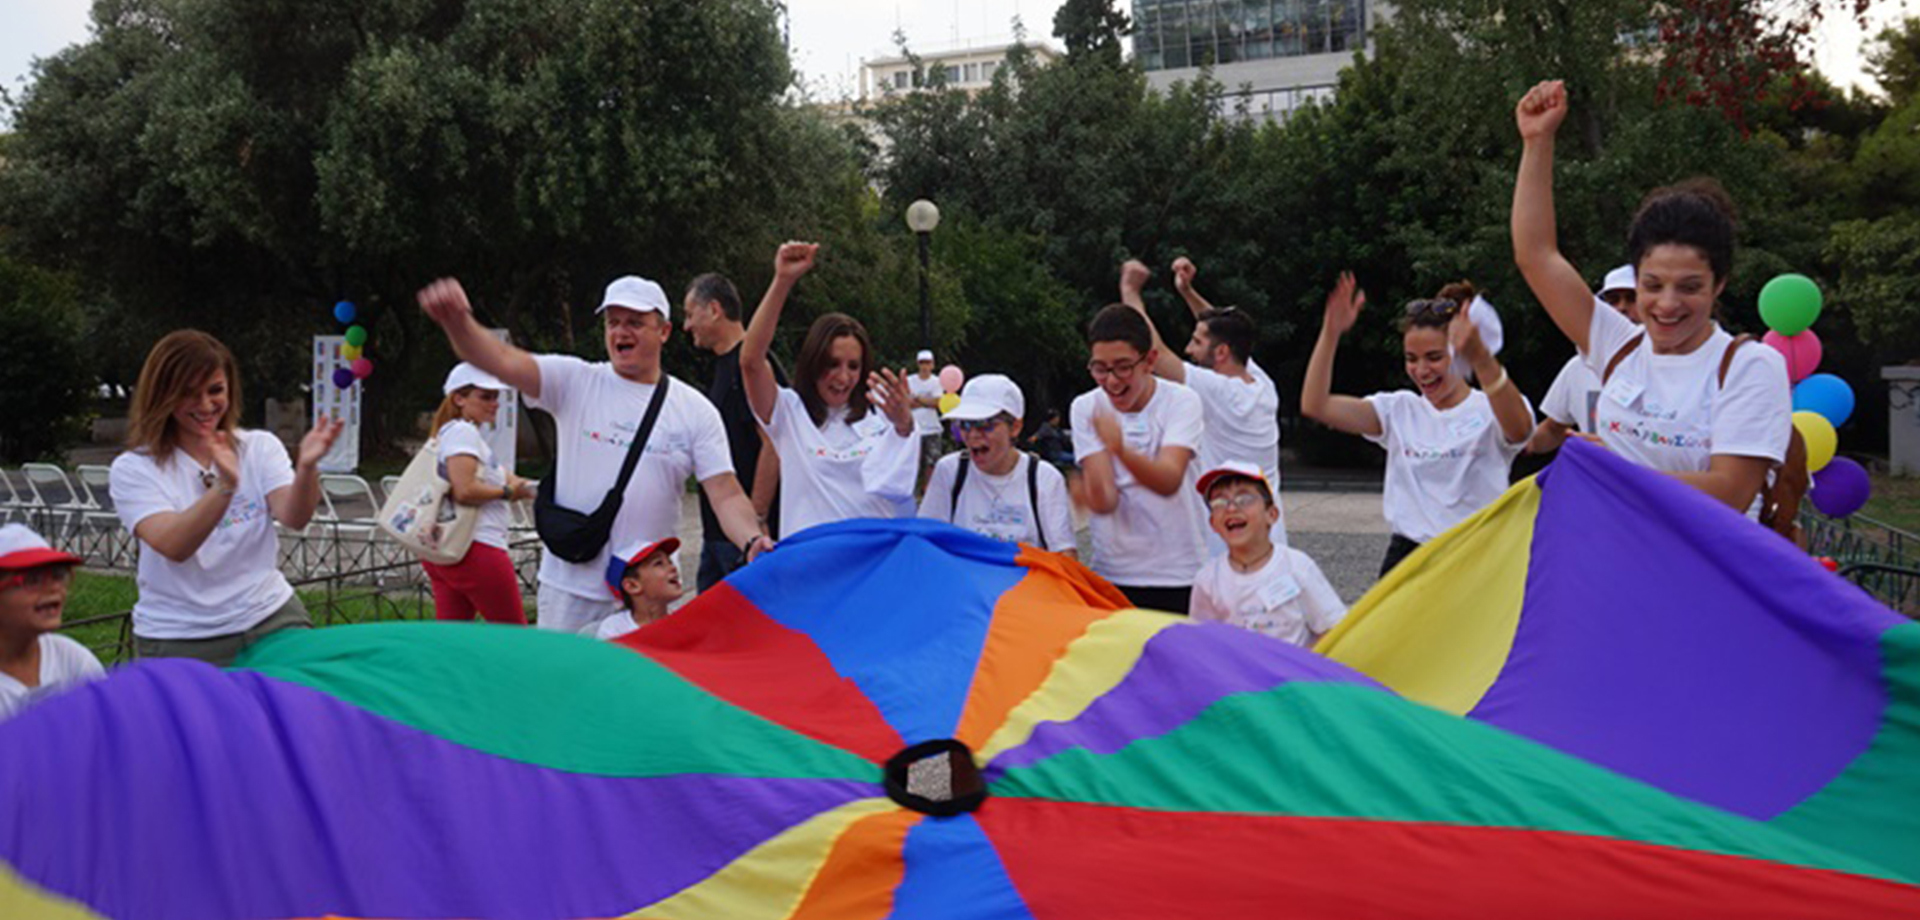 Οι μικροί Ροβινσώνες της ΕΛΕΠΑΠ ξαναχτυπούν! Ξεκινά αύριο το 4ήμερο εκπαιδευτικό ταξίδι τους στην Αθήνα